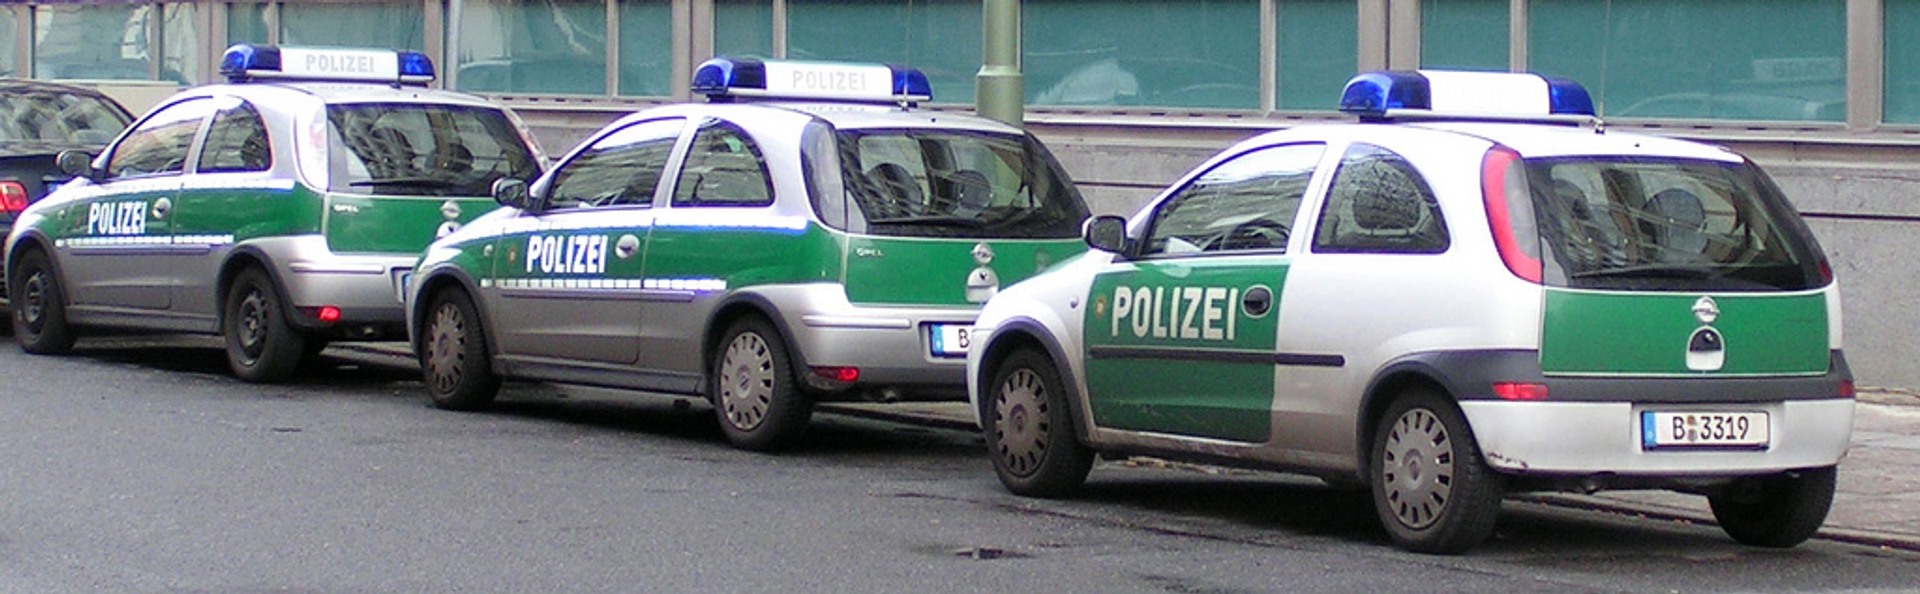 Afbeelding van Doodsbedreiging leidt naar extreemrechtse cel Duitse politie